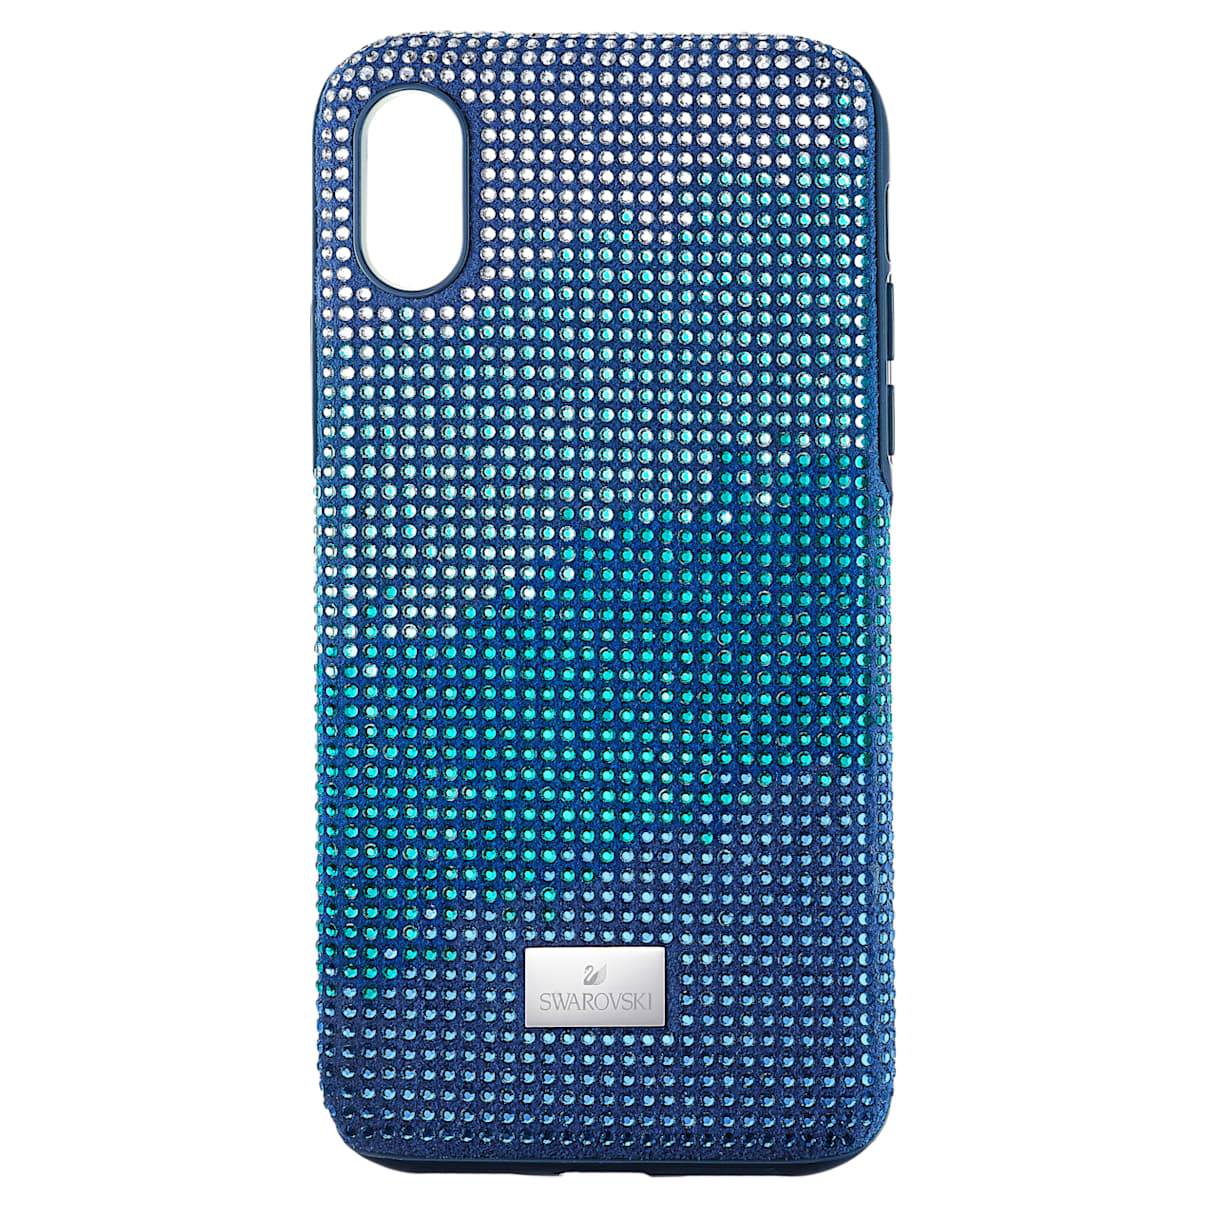 Custodia per smartphone con bordi protettivi Crystalgram, iPhone® XS Max, azzurro